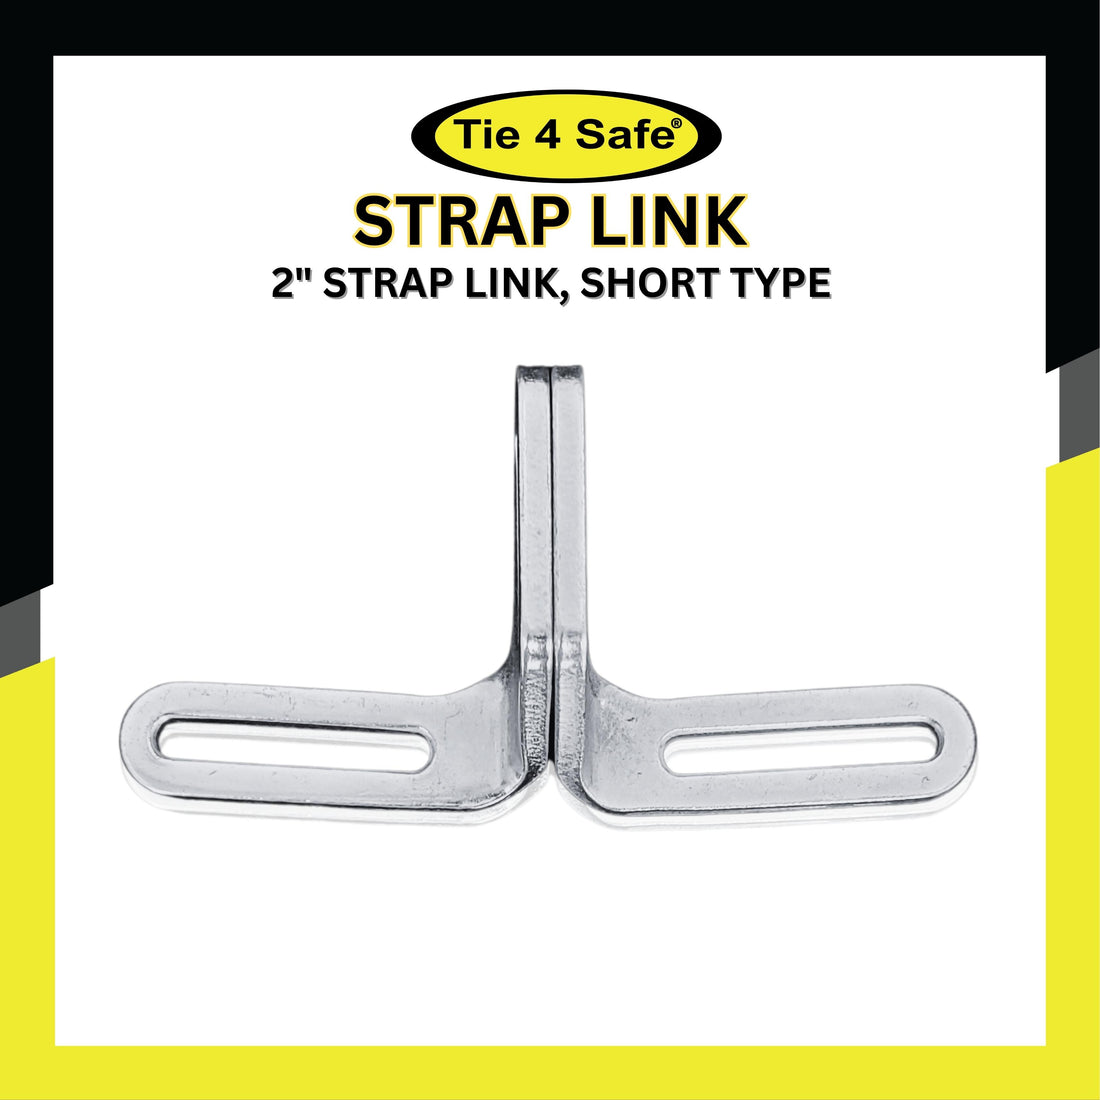 2" & 3" Strap Link